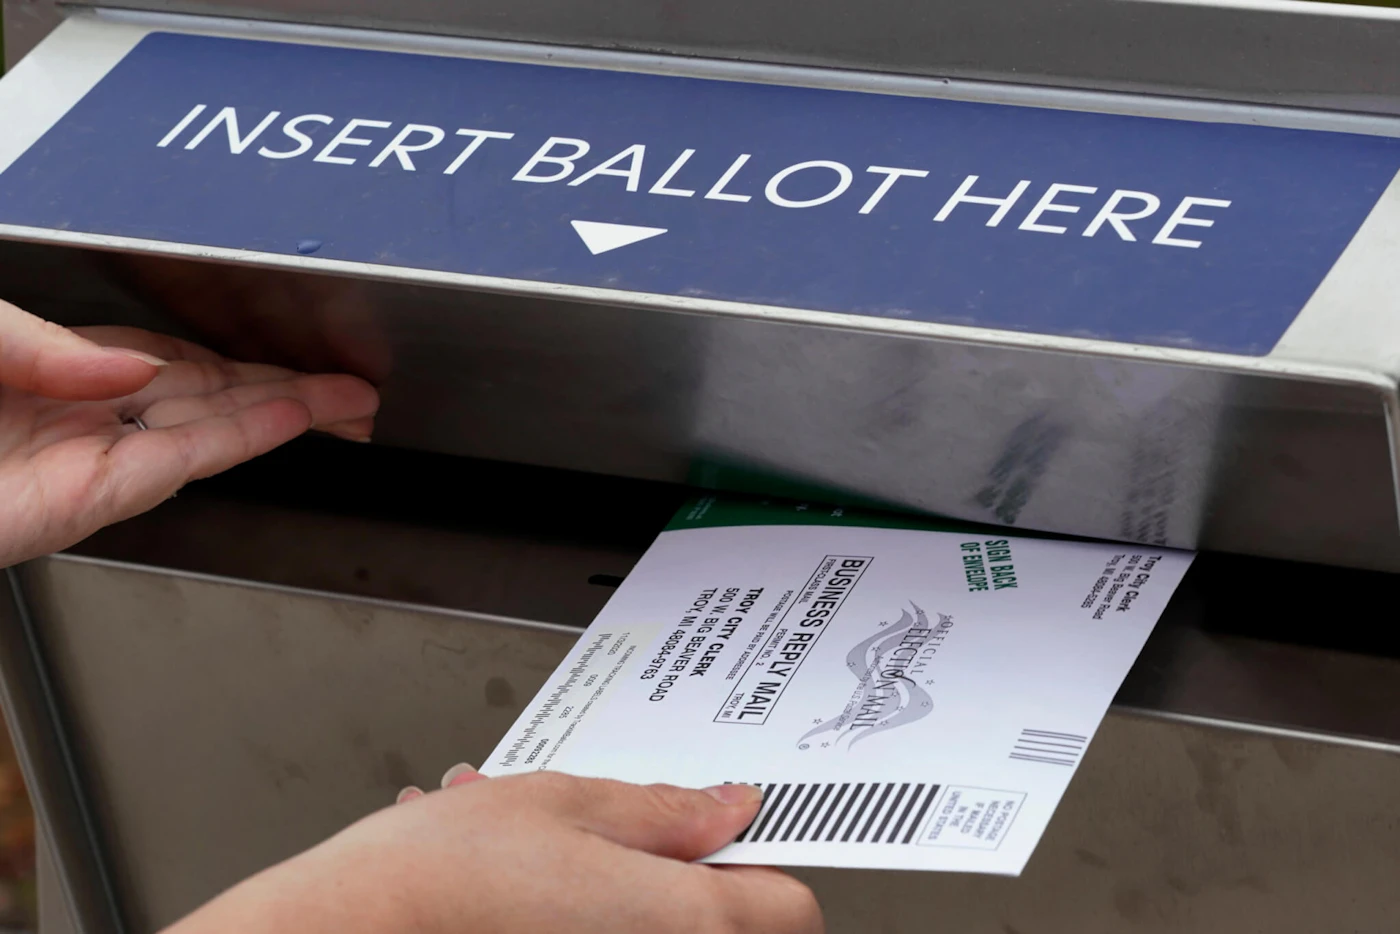 Nikki Schueller inserts her absentee voter ballot into a drop box in Troy, Mich., Thursday, Oct. 15, 2020. (AP Photo/Paul Sancya)